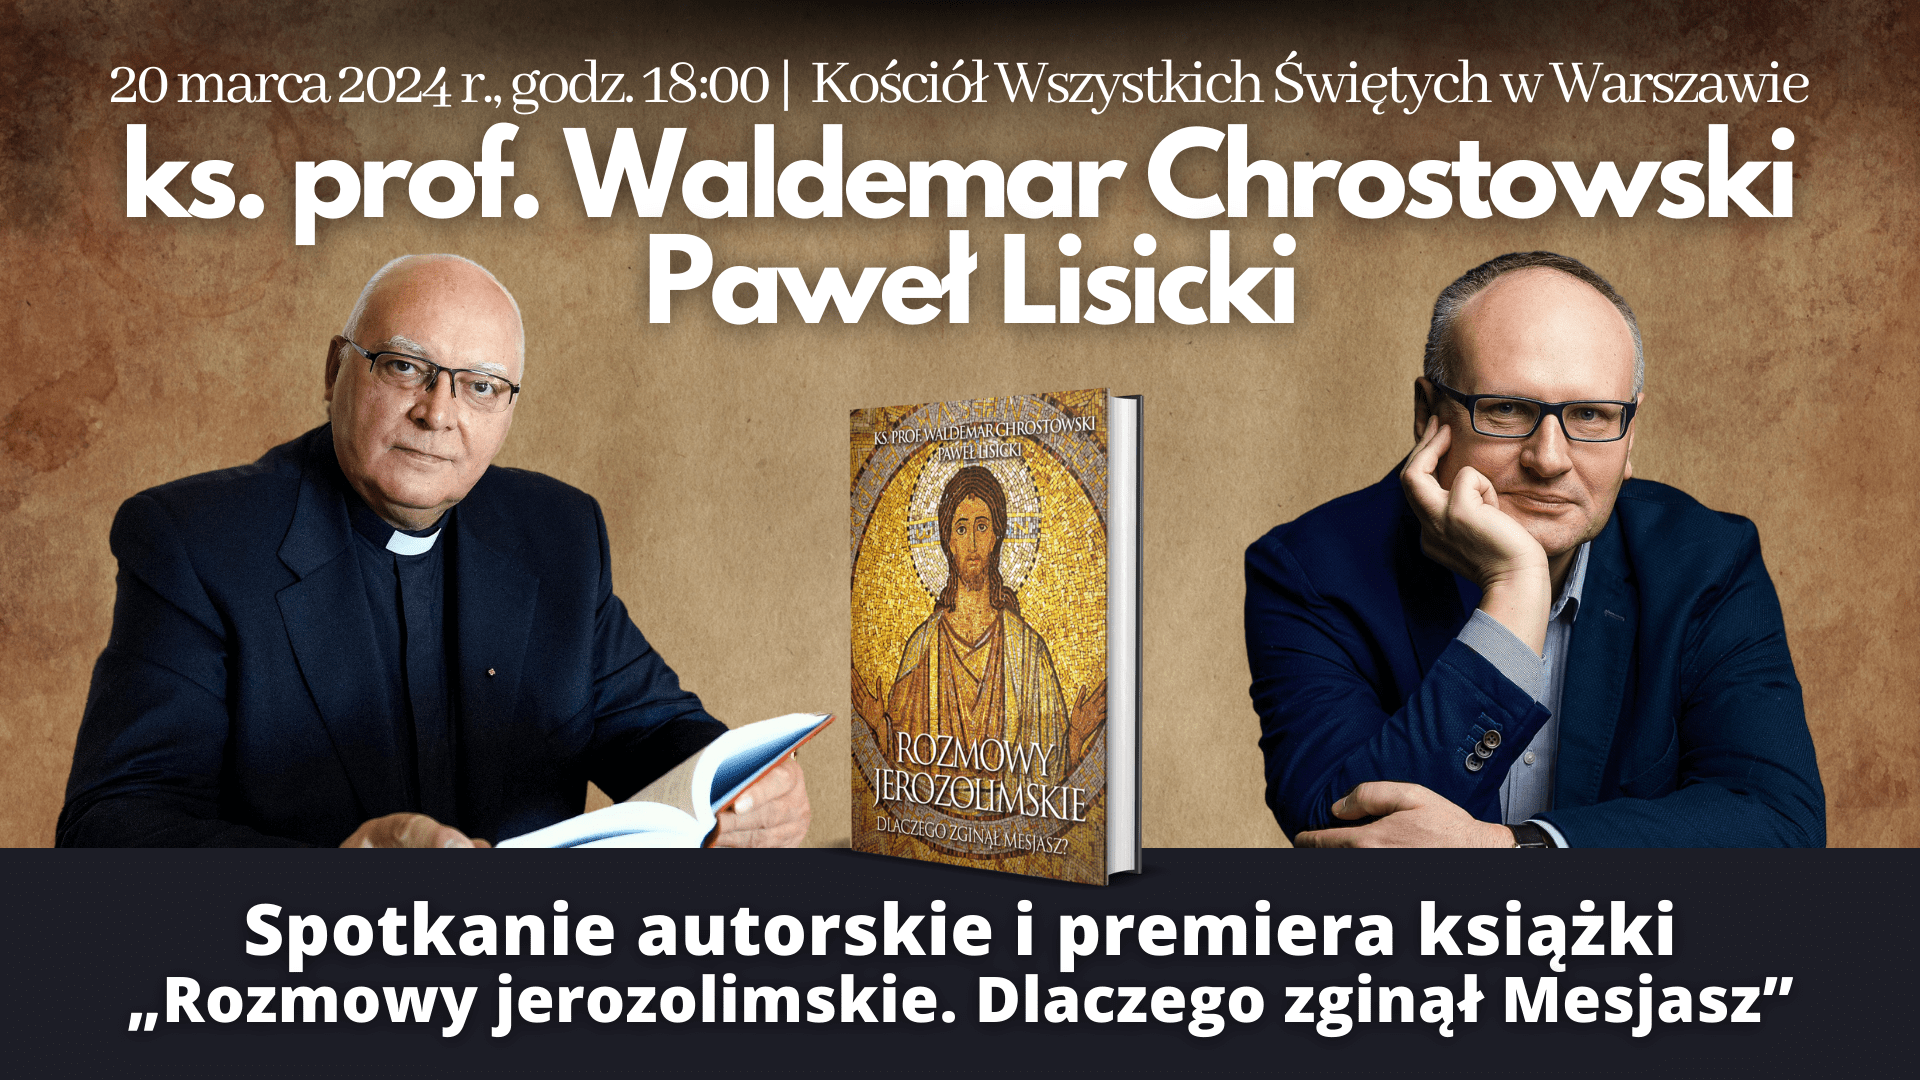 Spotkanie z autorami: ks. prof. Waldemarem Chrostowskim i Pawłem Lisickim